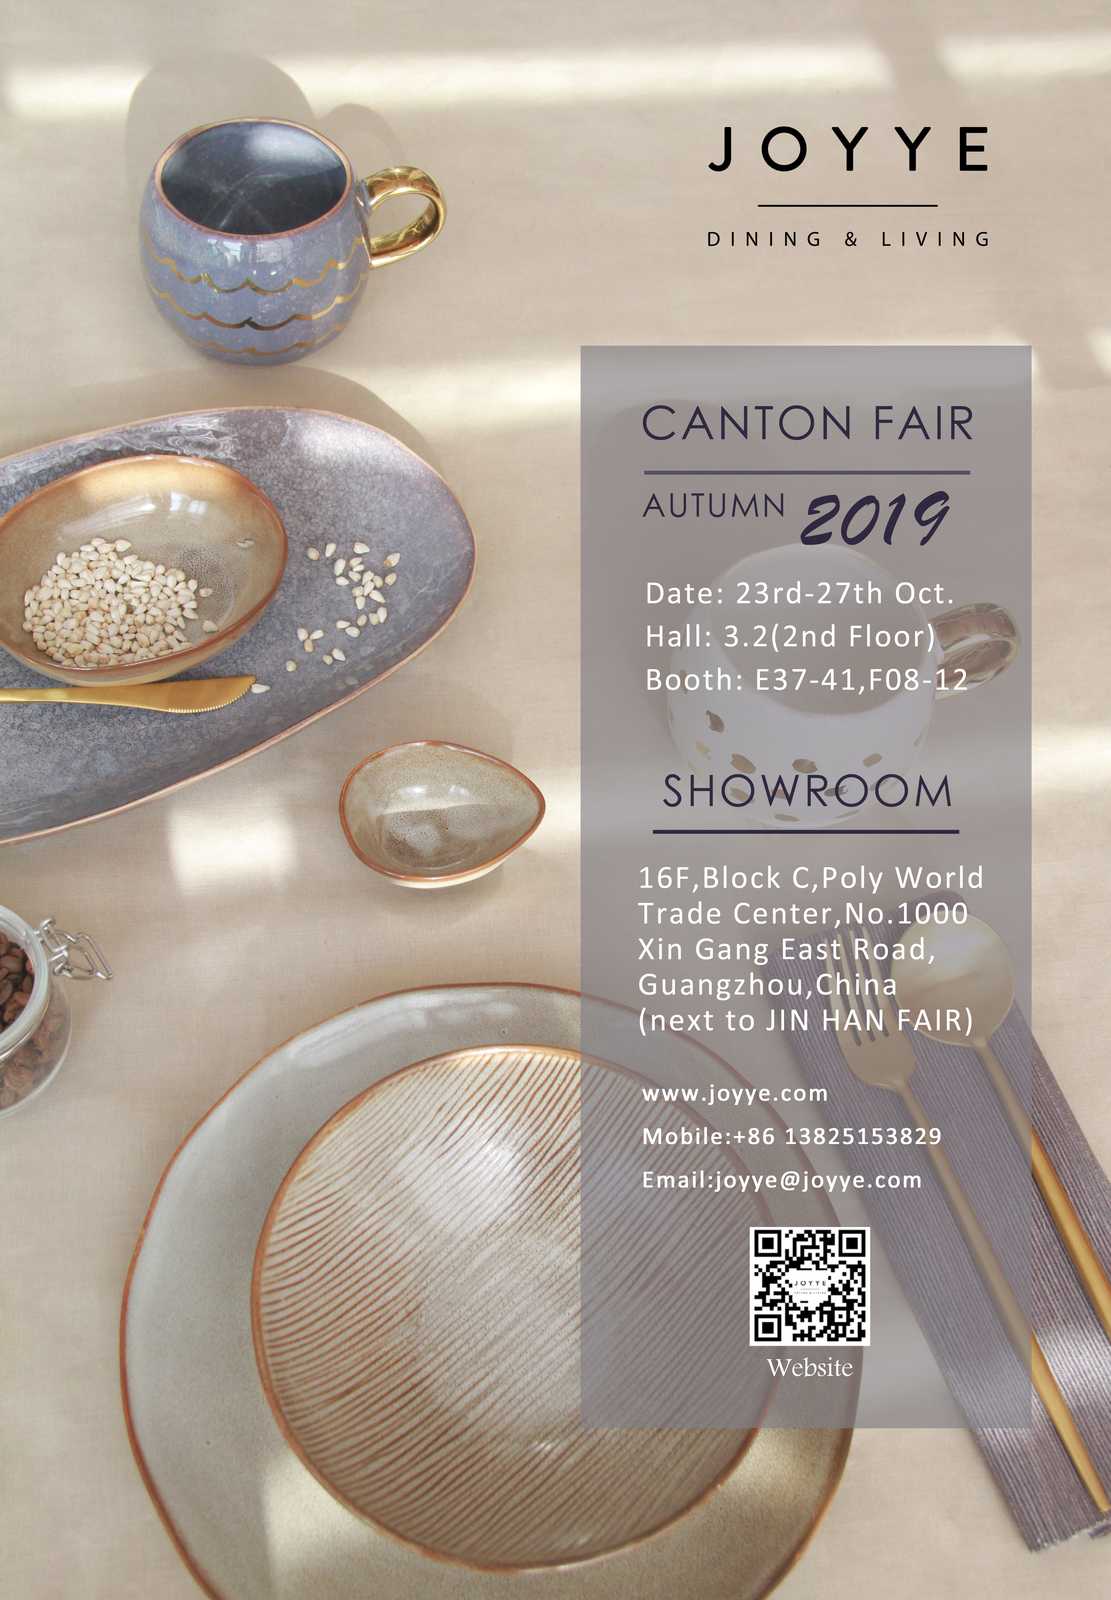 Joyye 2019 Autumn Canton Fair Invitation